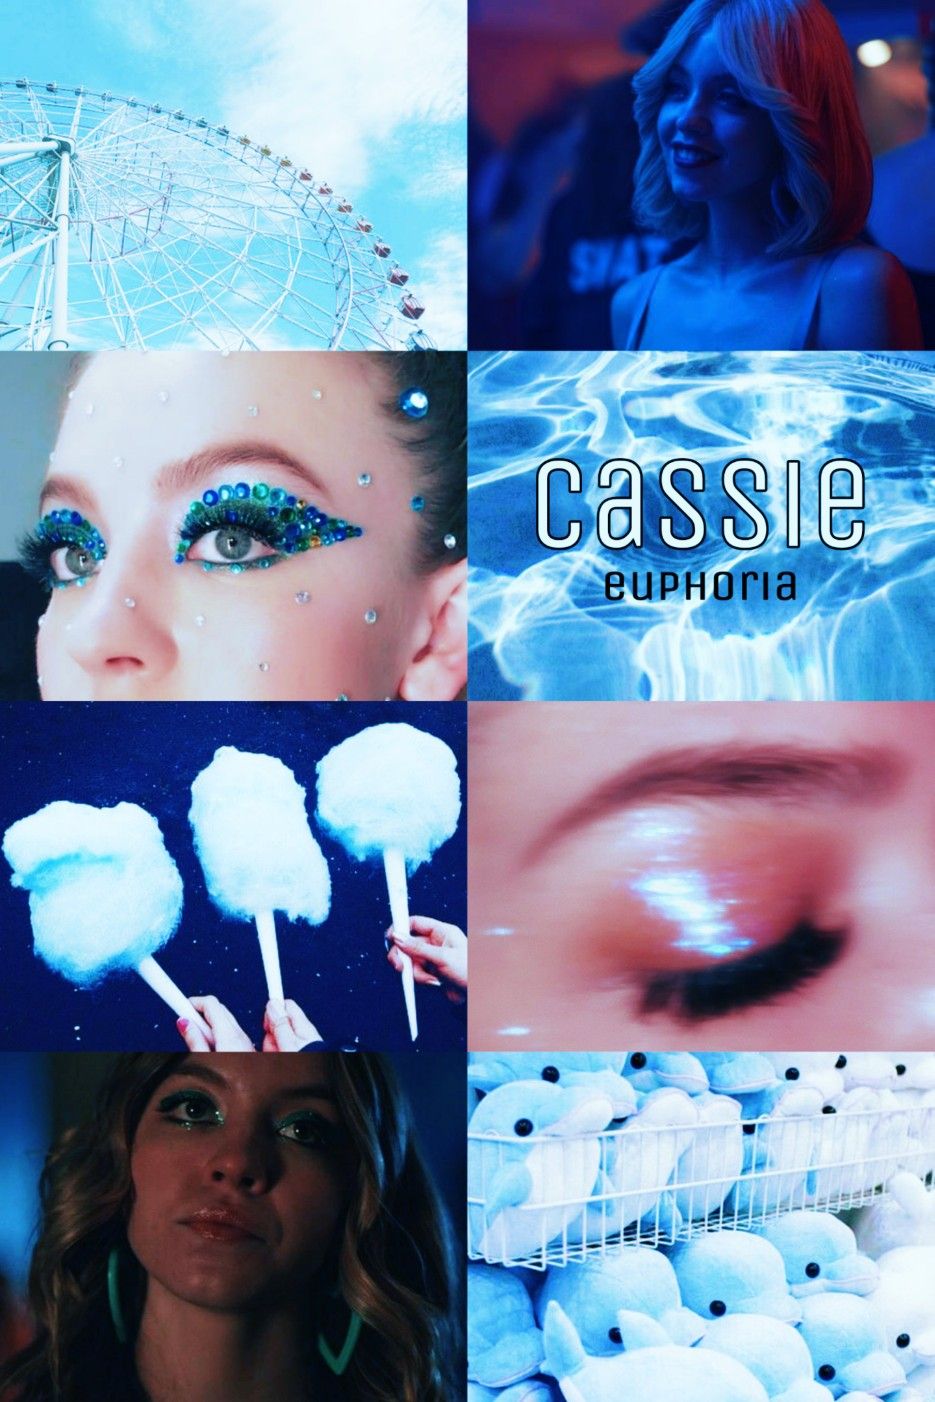 Cassie euphoria aesthetic euphoria cassie blue wallpaper iphone